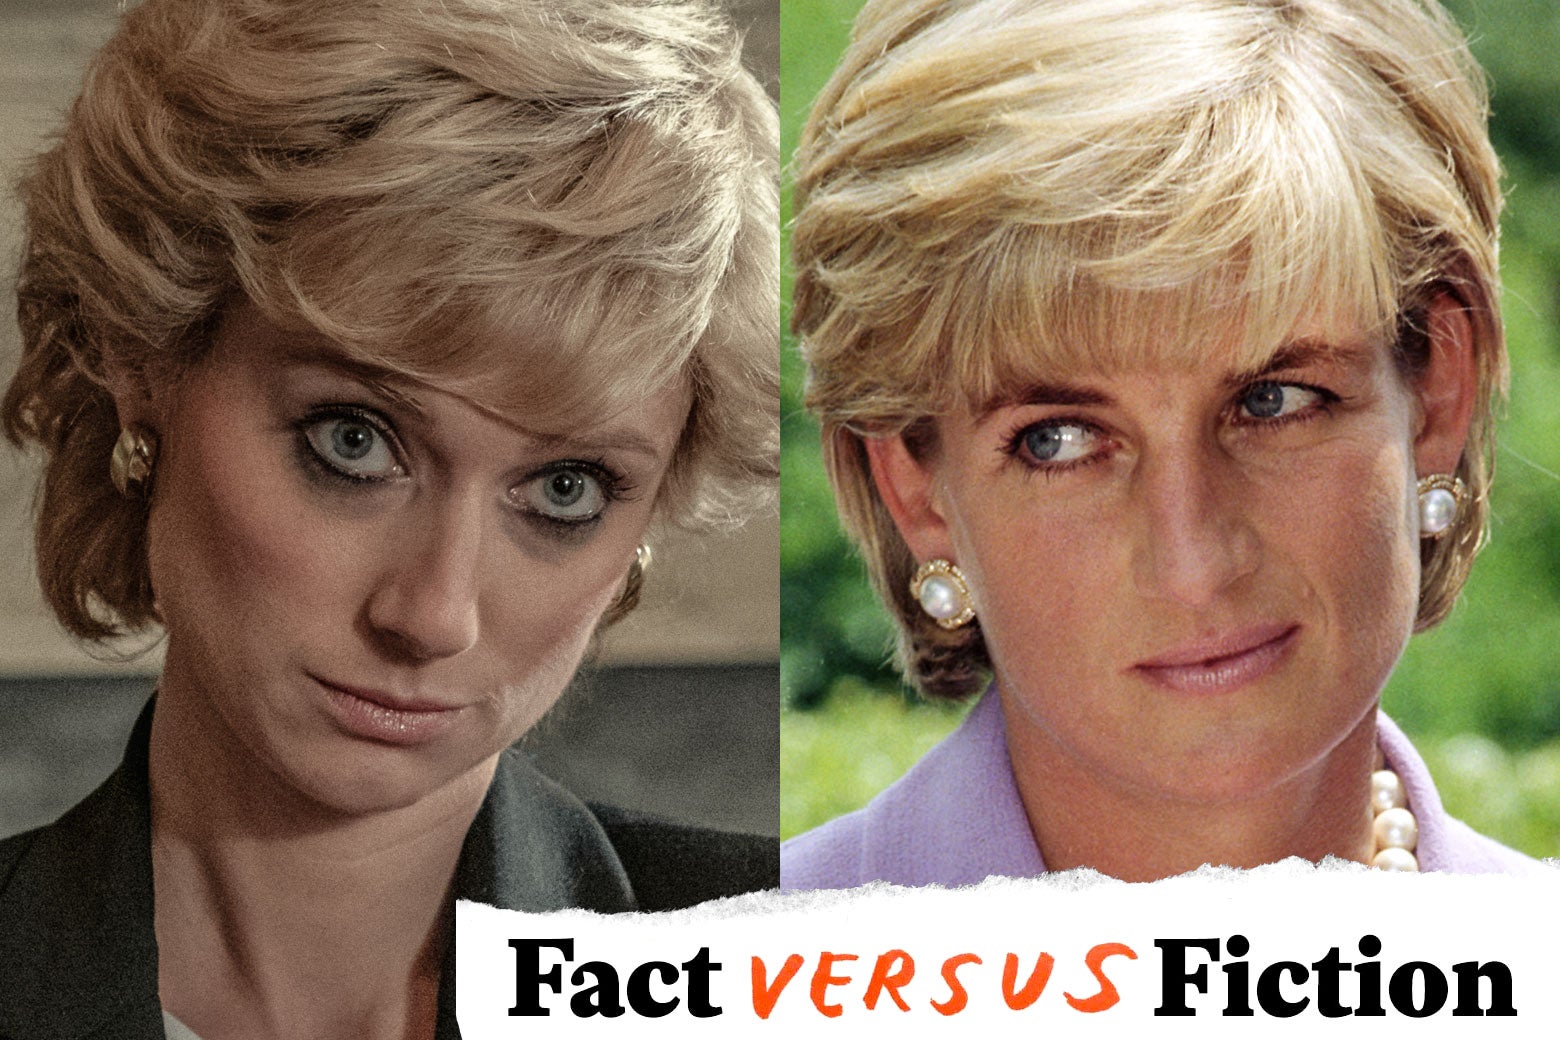 Left: Elizabeth Debicki as Princess Diana. Right: Princess Diana.